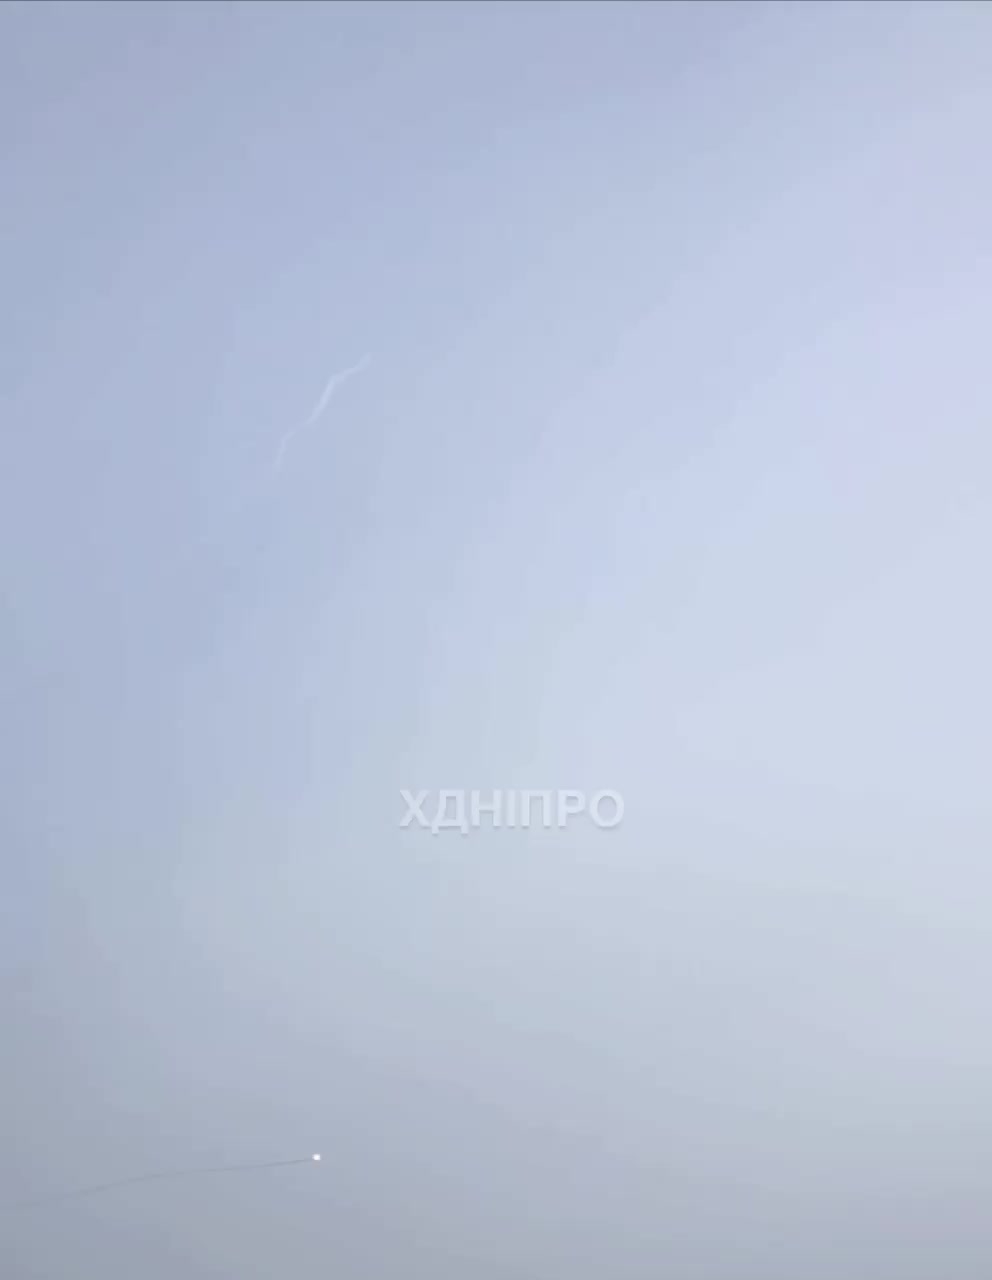 Η αεράμυνα κατέρριψε πύραυλο πάνω από την πόλη Ντνίπρο